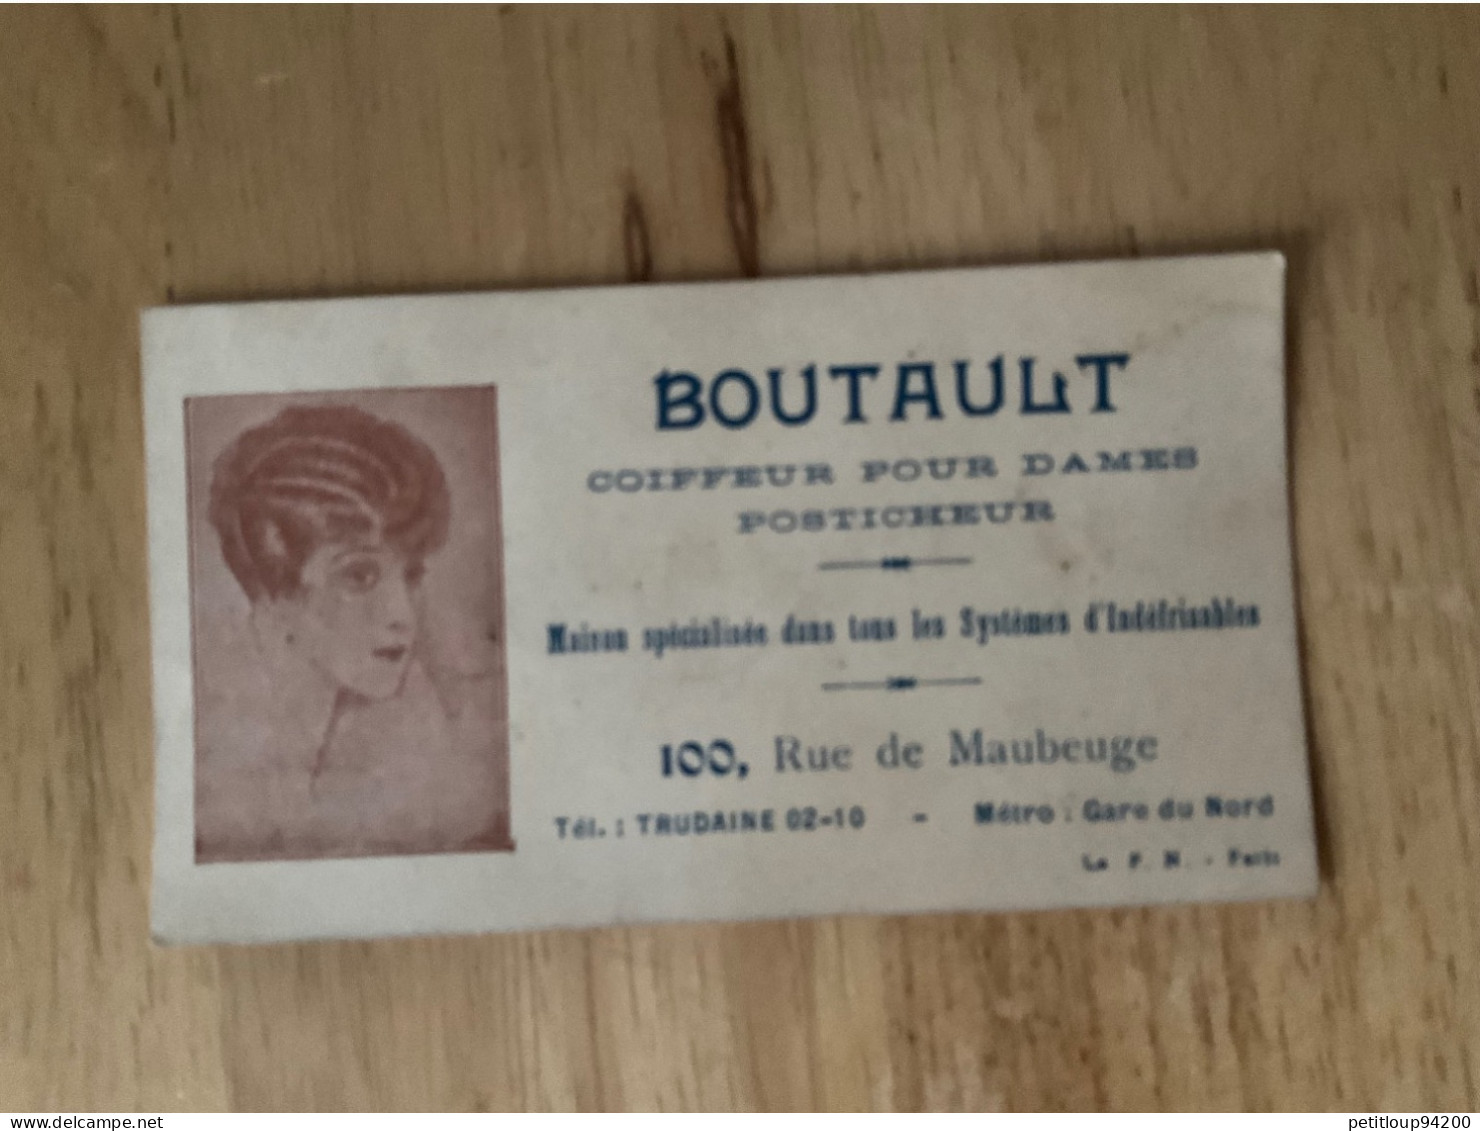 CARTE DE VISITE Coiffeur Pour Dames  Posticheur  BOUTAULT  Paris - Tarjetas De Visita